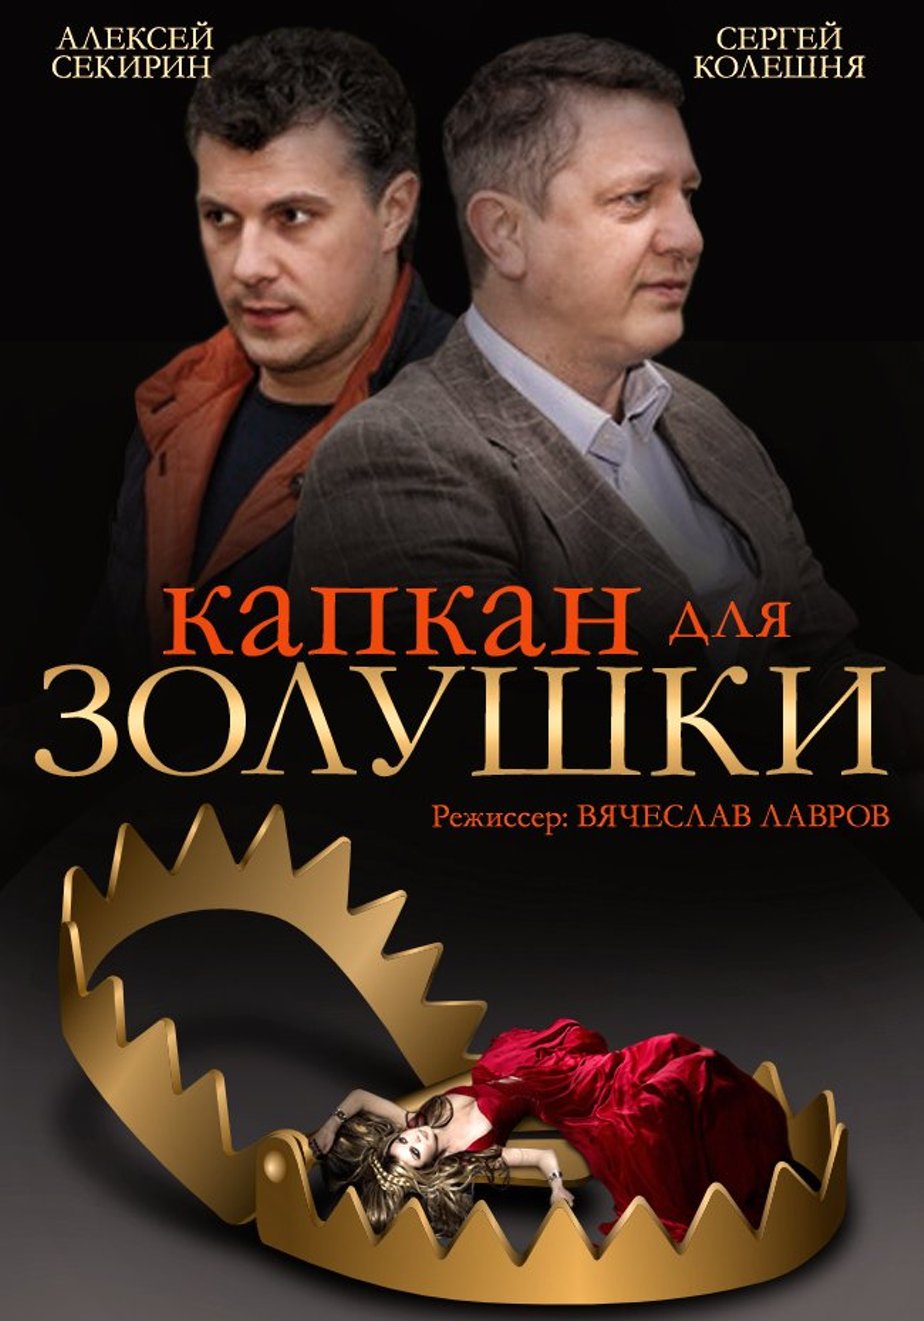 Откровенная сцена с Екатериной Директоренко – Капкан (2007)